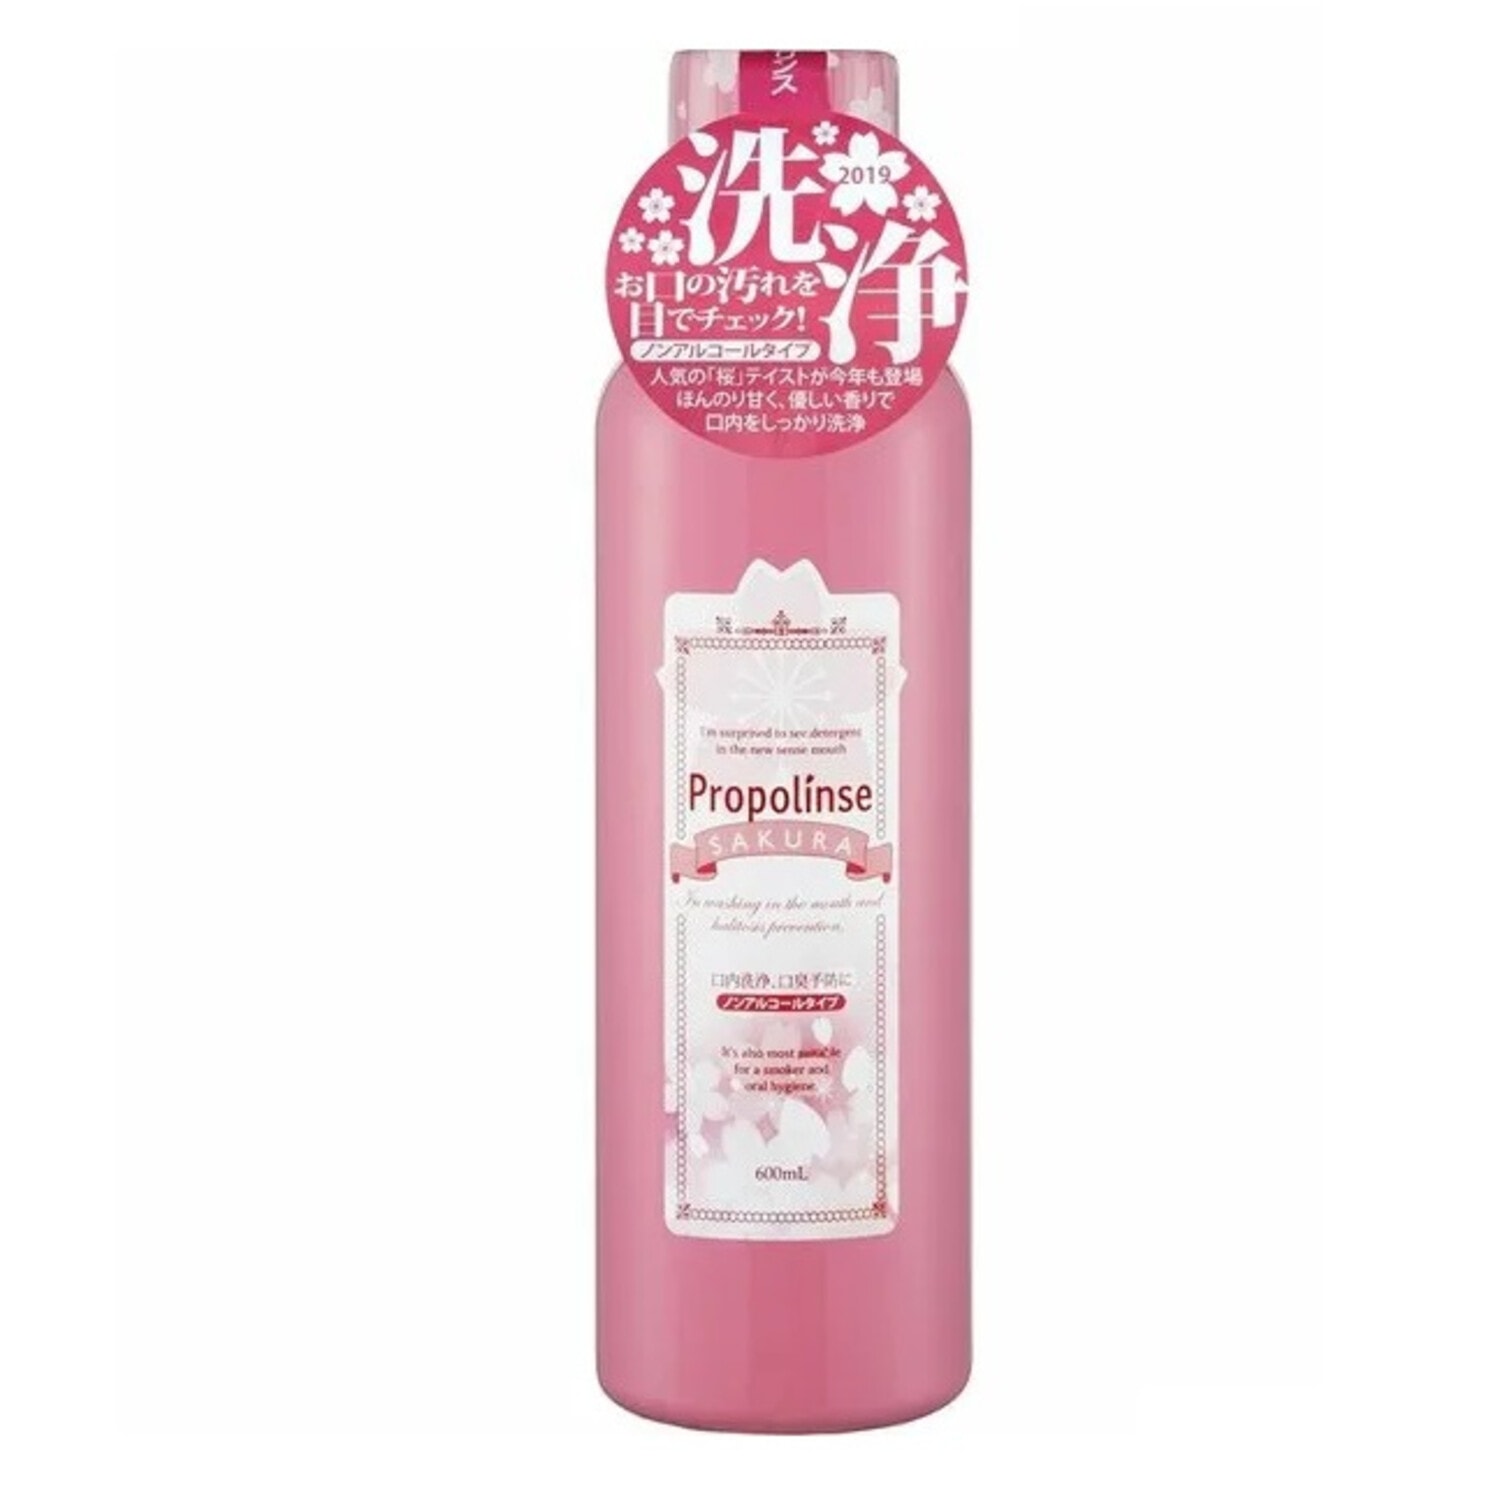 PROPOLINSE Sakura Ополаскиватель для полости рта, с индикацией загрязнения, с прополисом и ароматом сакуры, 600 мл. / 246977